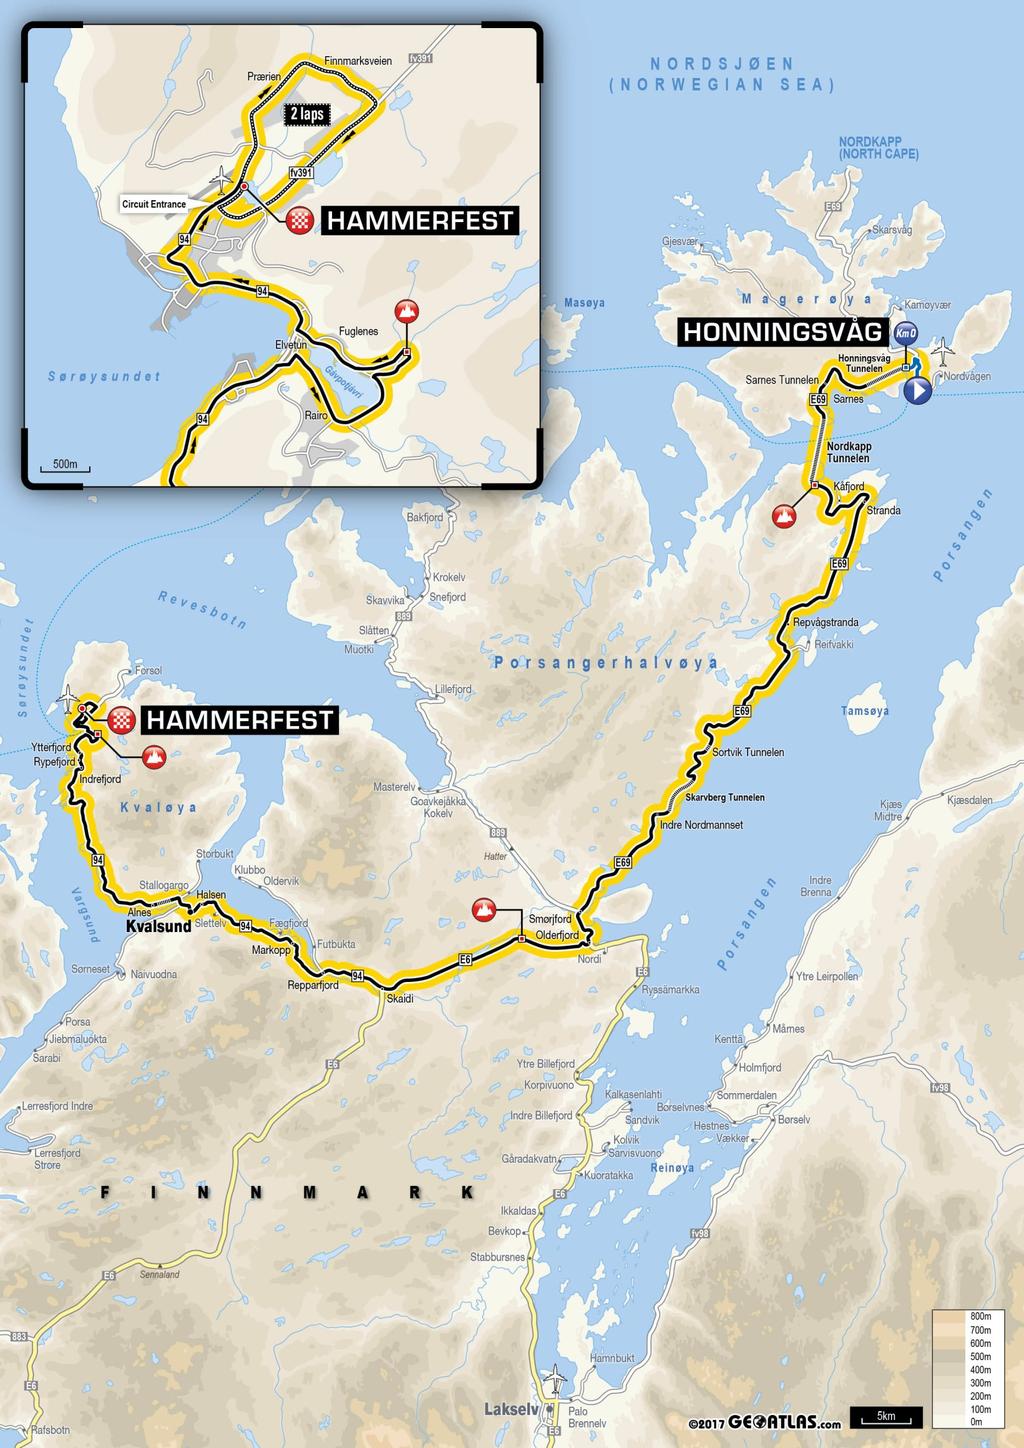 7 Hele Hammerfest sykler lørdag 18. august Det meste av byen er stengt på løpsdagen Det blir stengte veier og mindre parkering i hele byen.